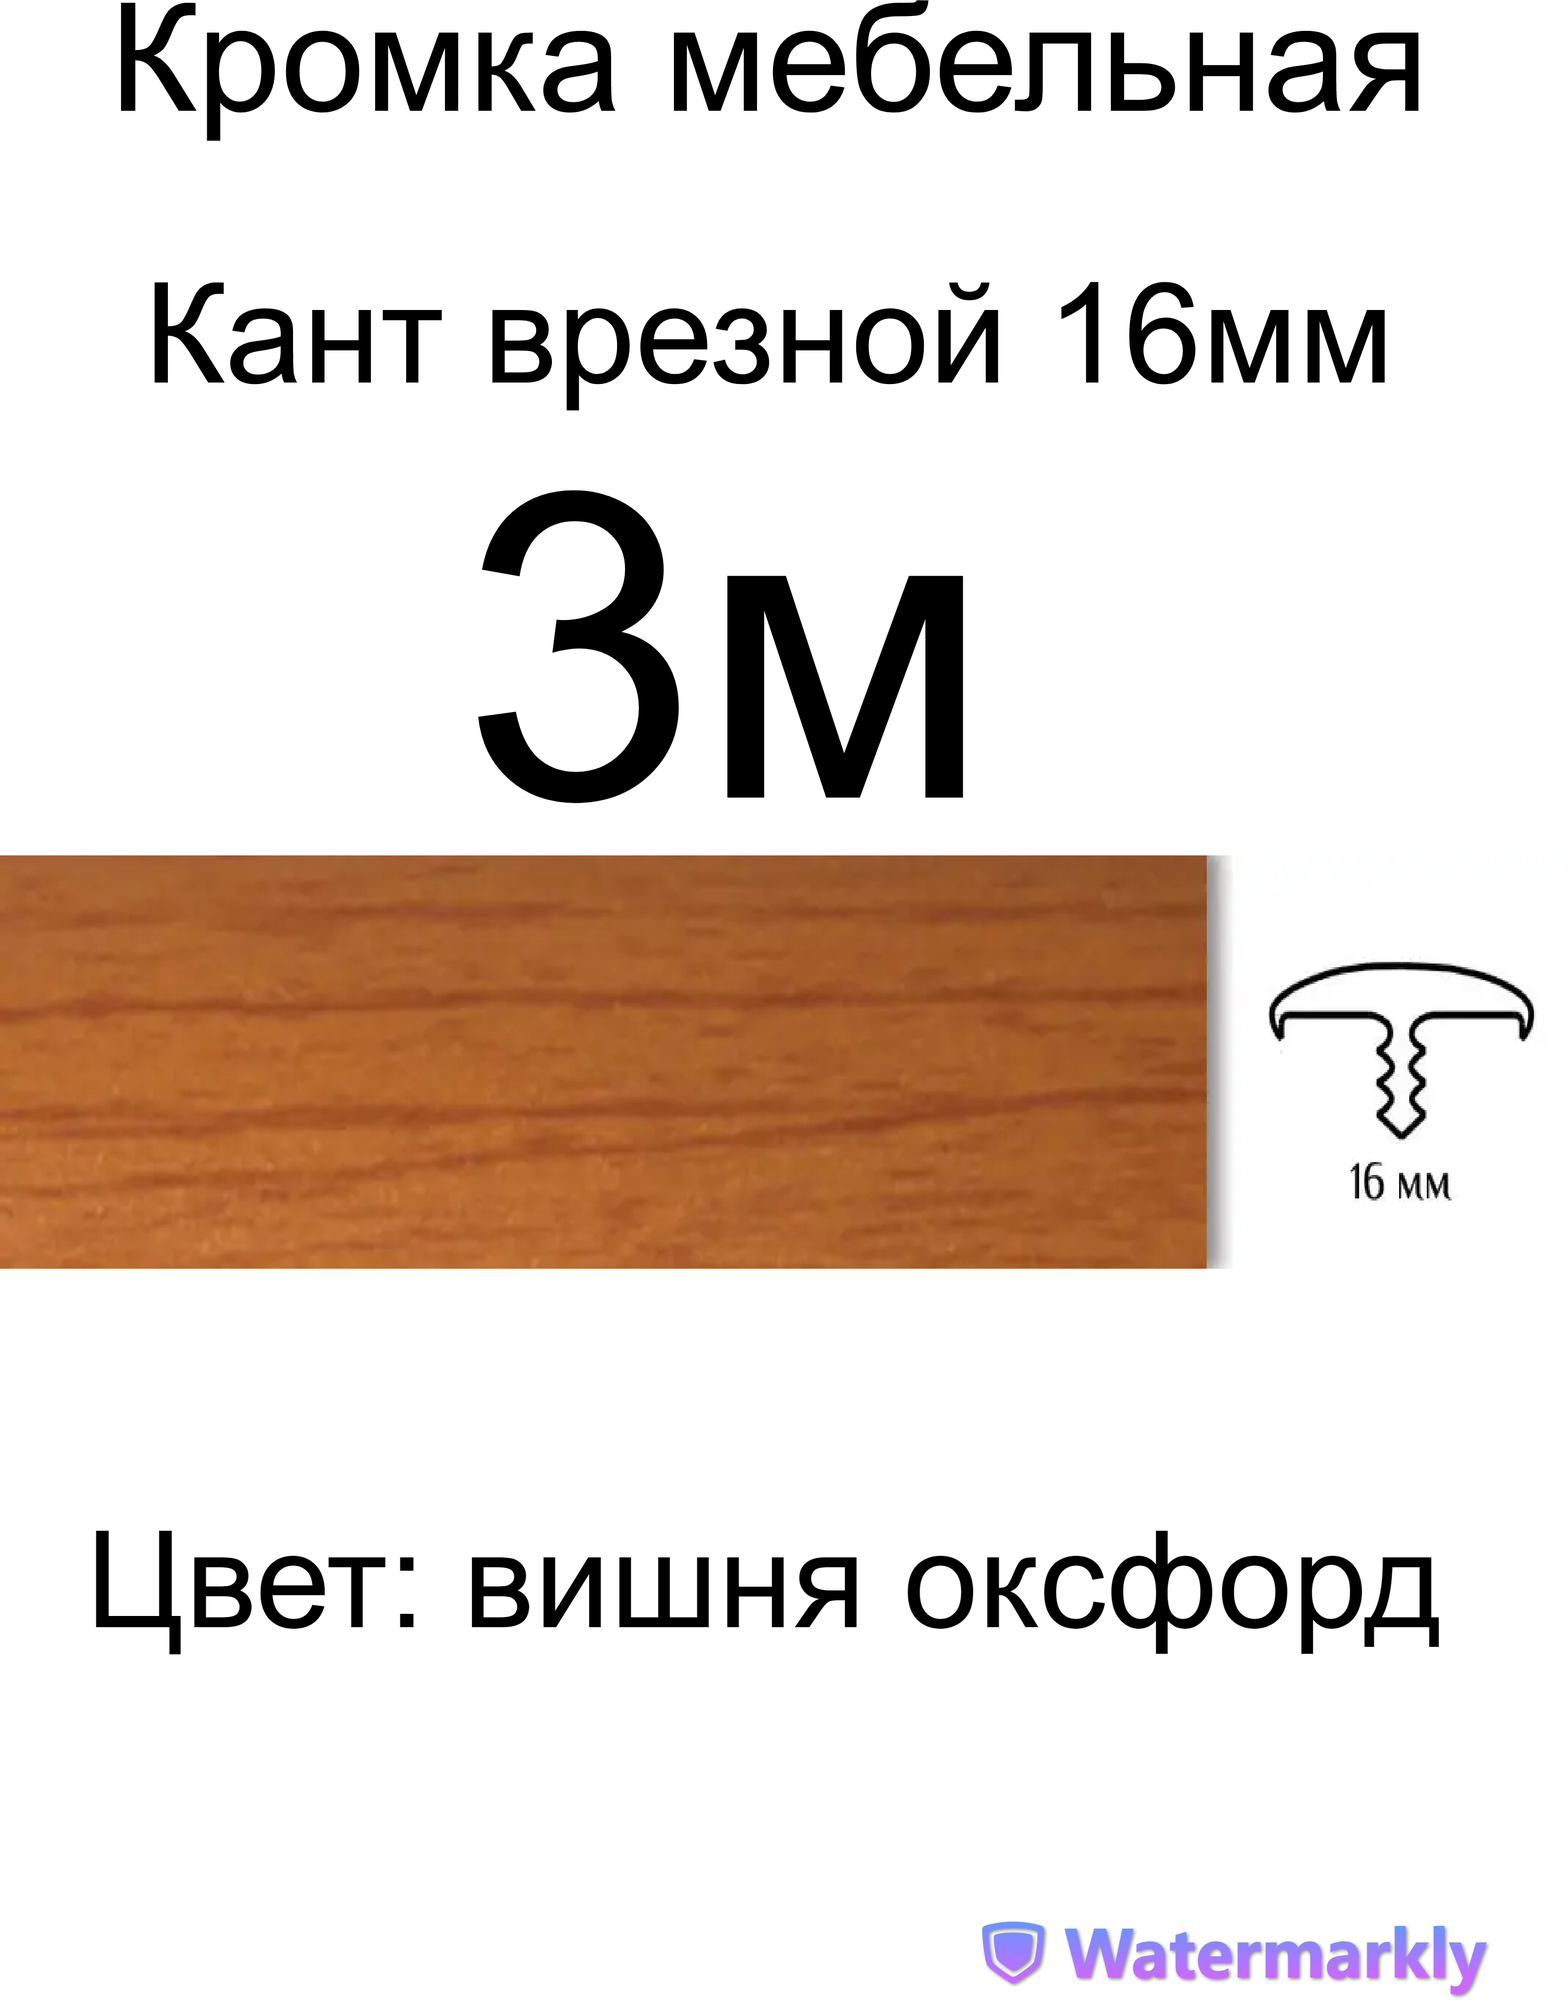 Мебельный Т-образный профиль(3 метра) кант на ДСП 16мм, врезной, цвет: вишня оксфорд